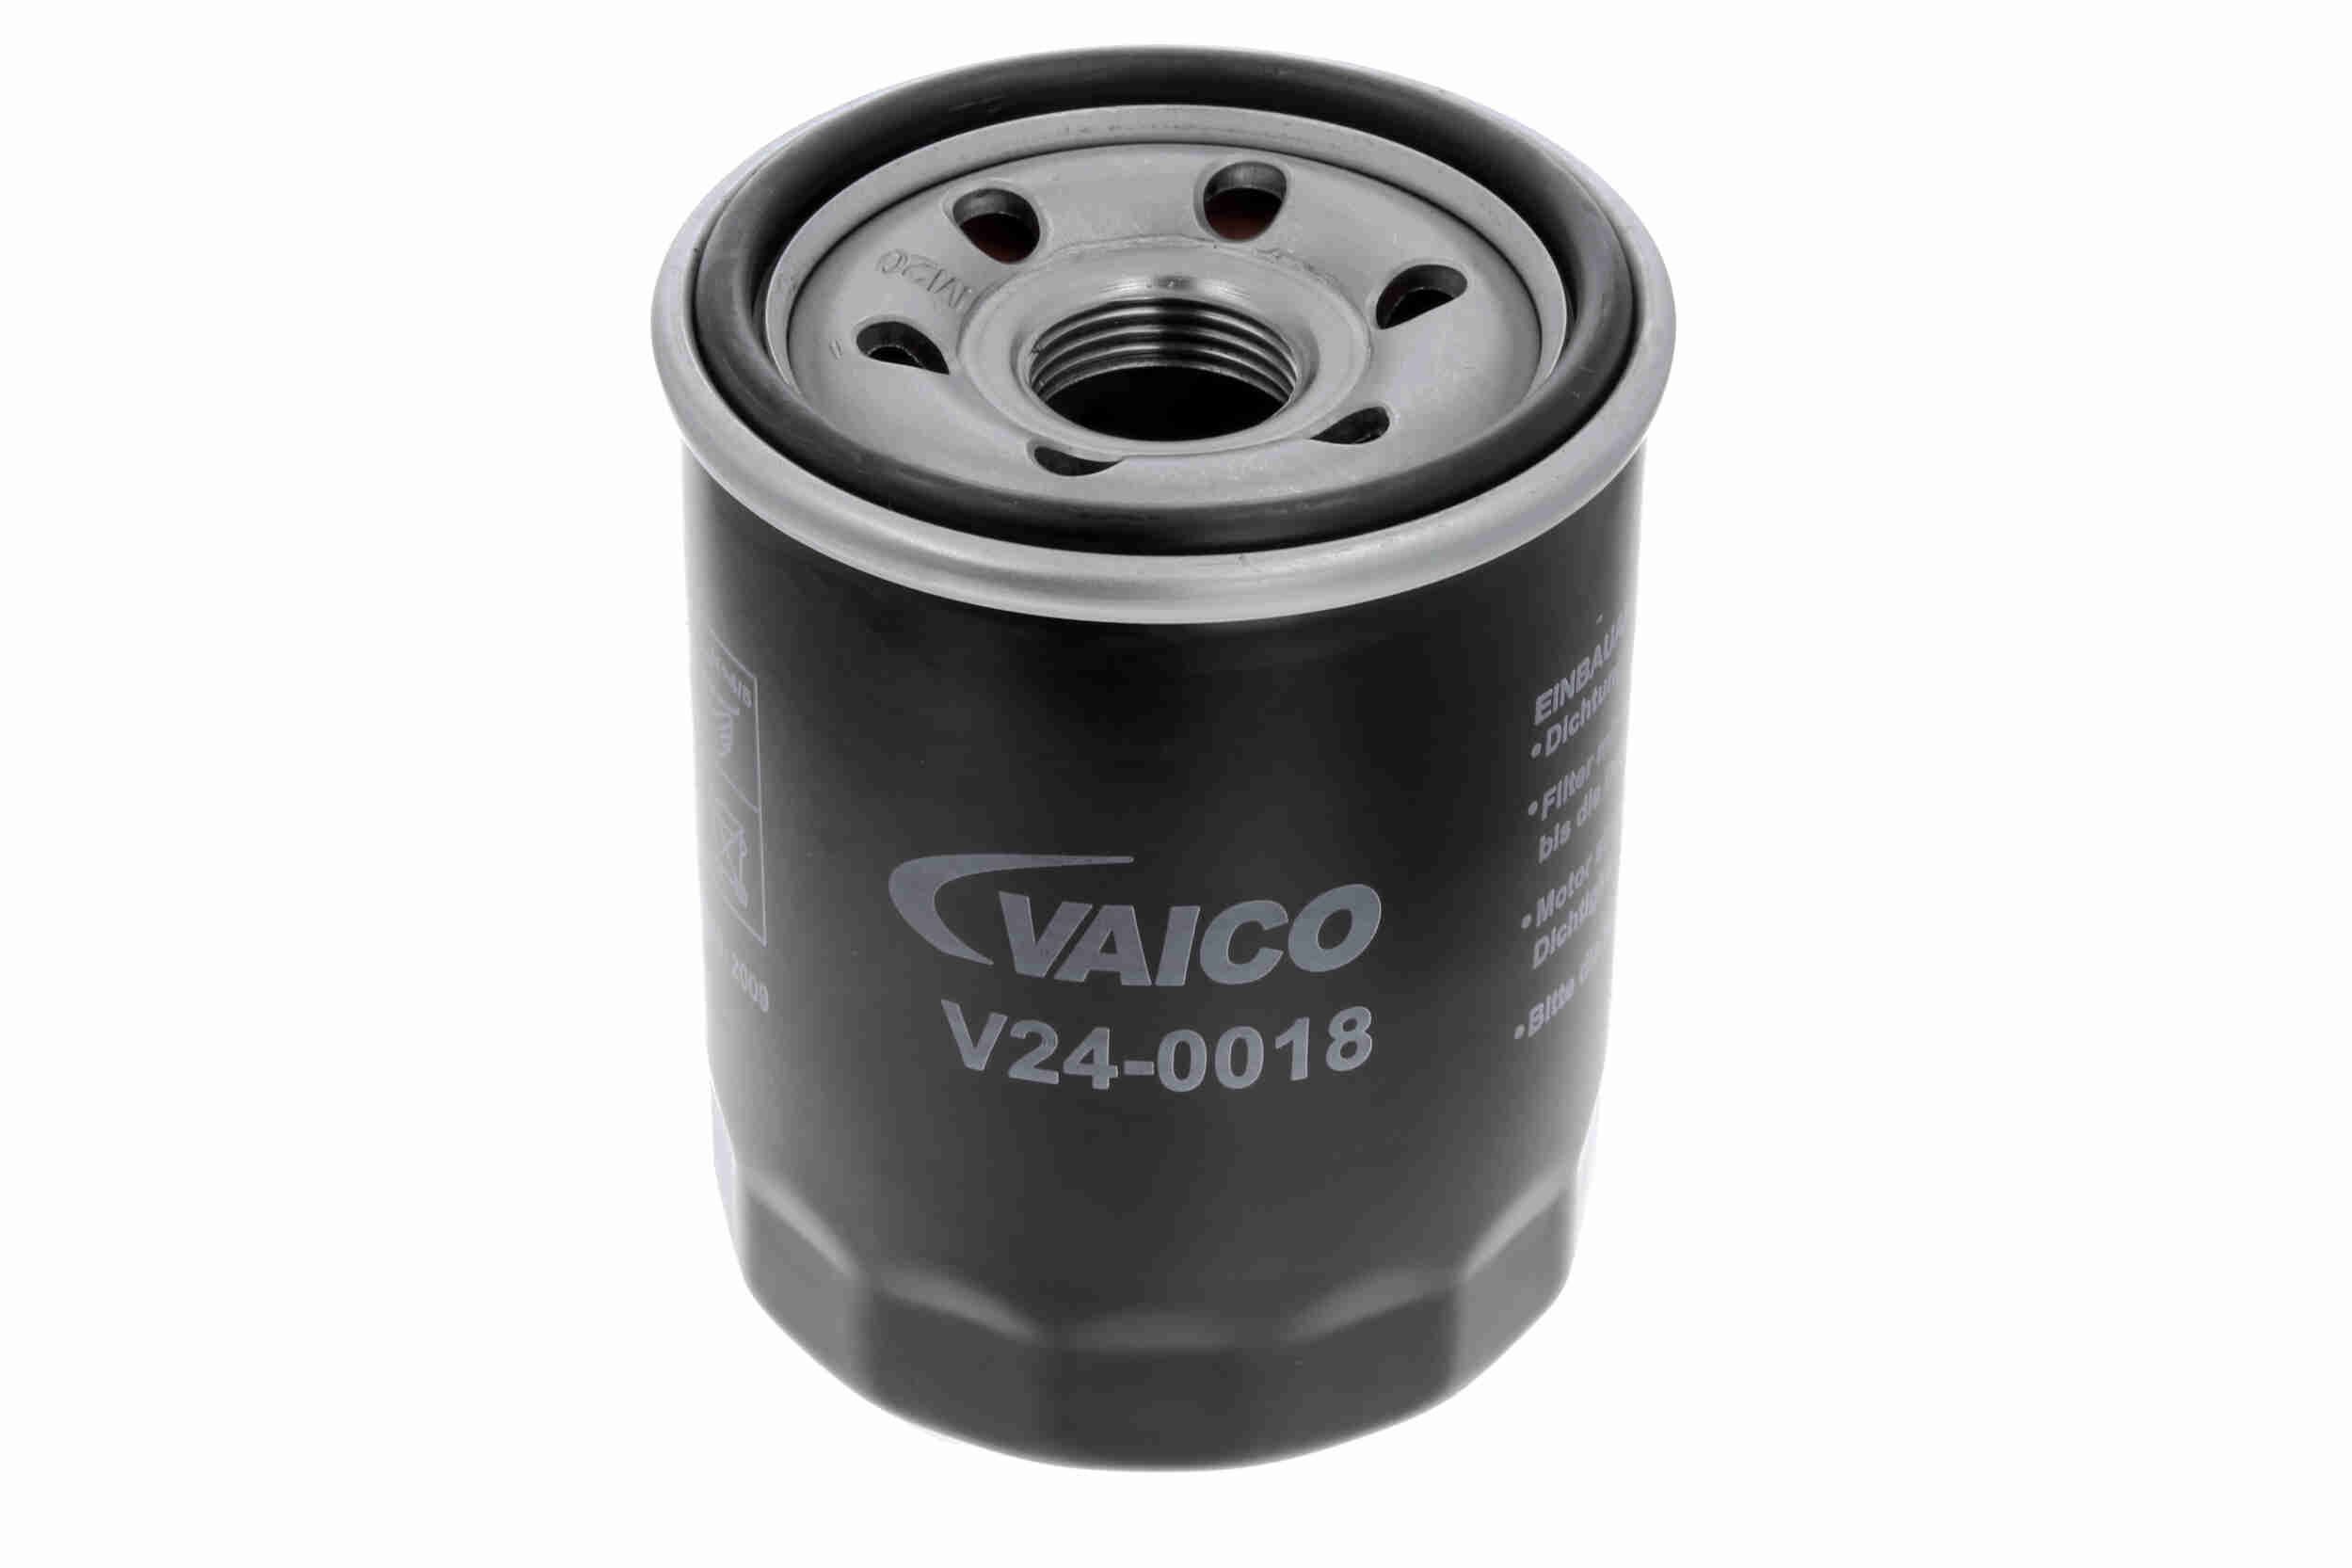 VAICO V24-0018 Olejový filtr R: 66mm, R: 67mm, Vnitřni průměr 2: 54mm, Vnitřni průměr 2: 62mm, Výška: 90mm